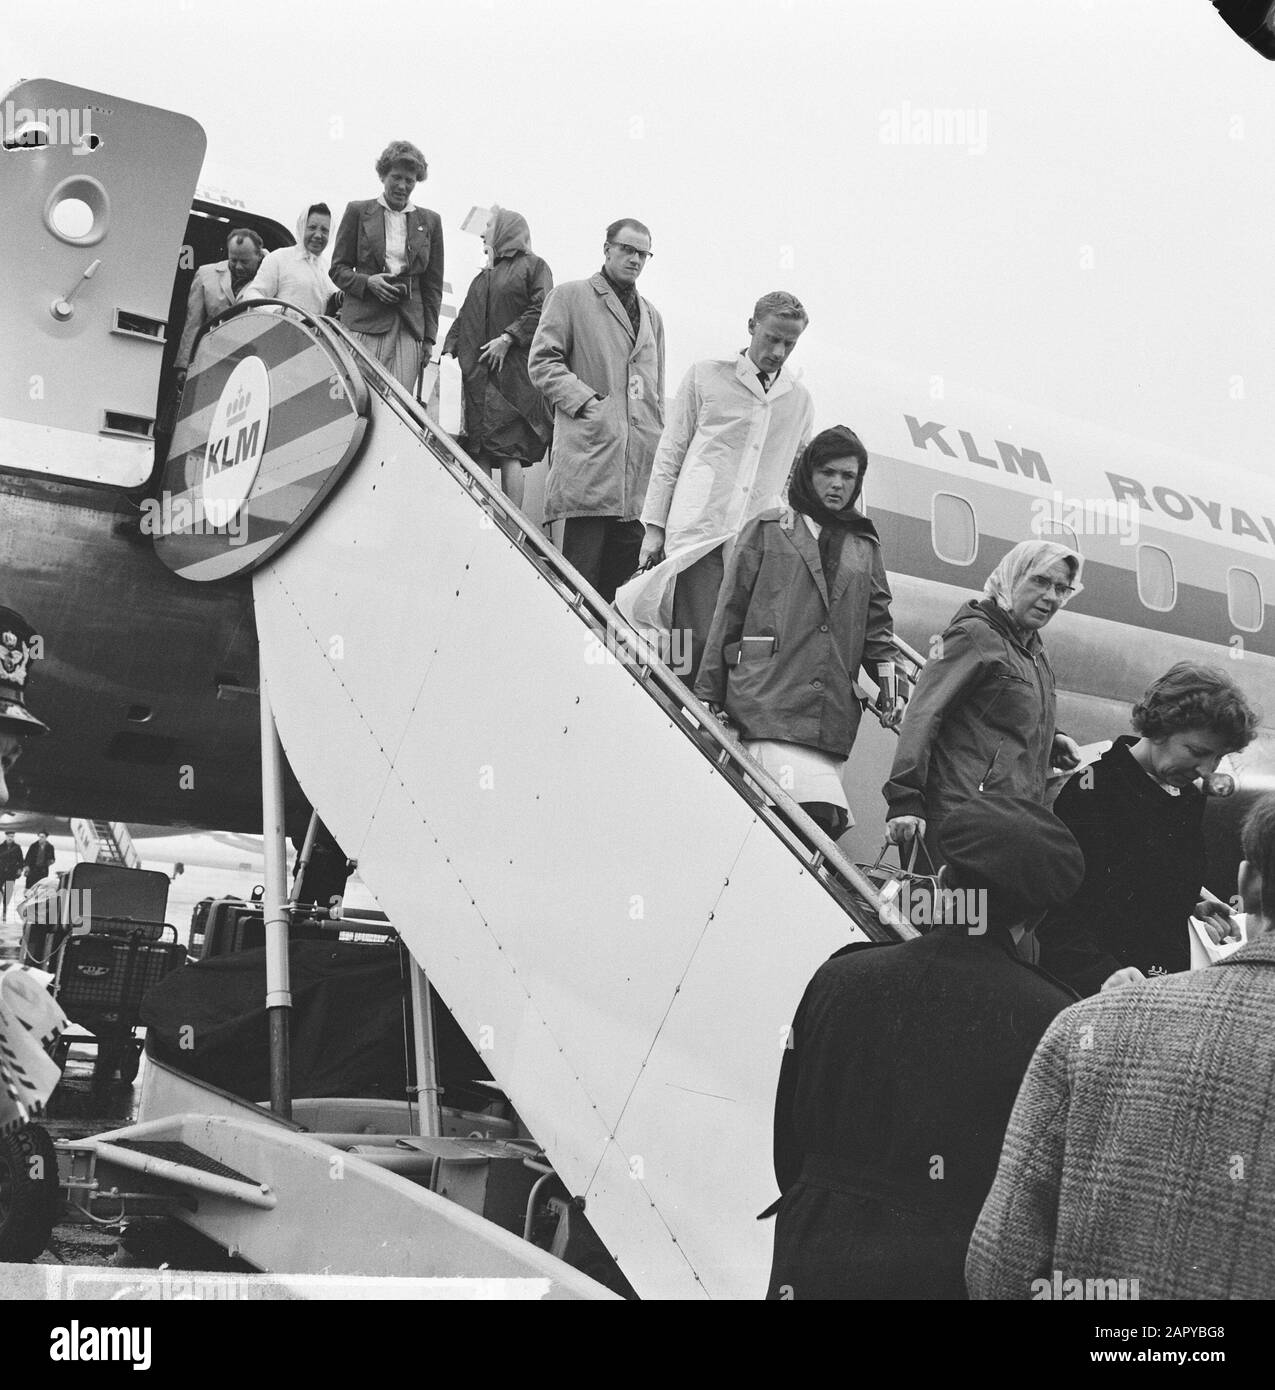 Escursionisti olandesi da quattro giorni in Israele indietro Data: 24 marzo 1964 Località: Noord-Holland, Schiphol Parole Chiave: Escursionisti Foto Stock